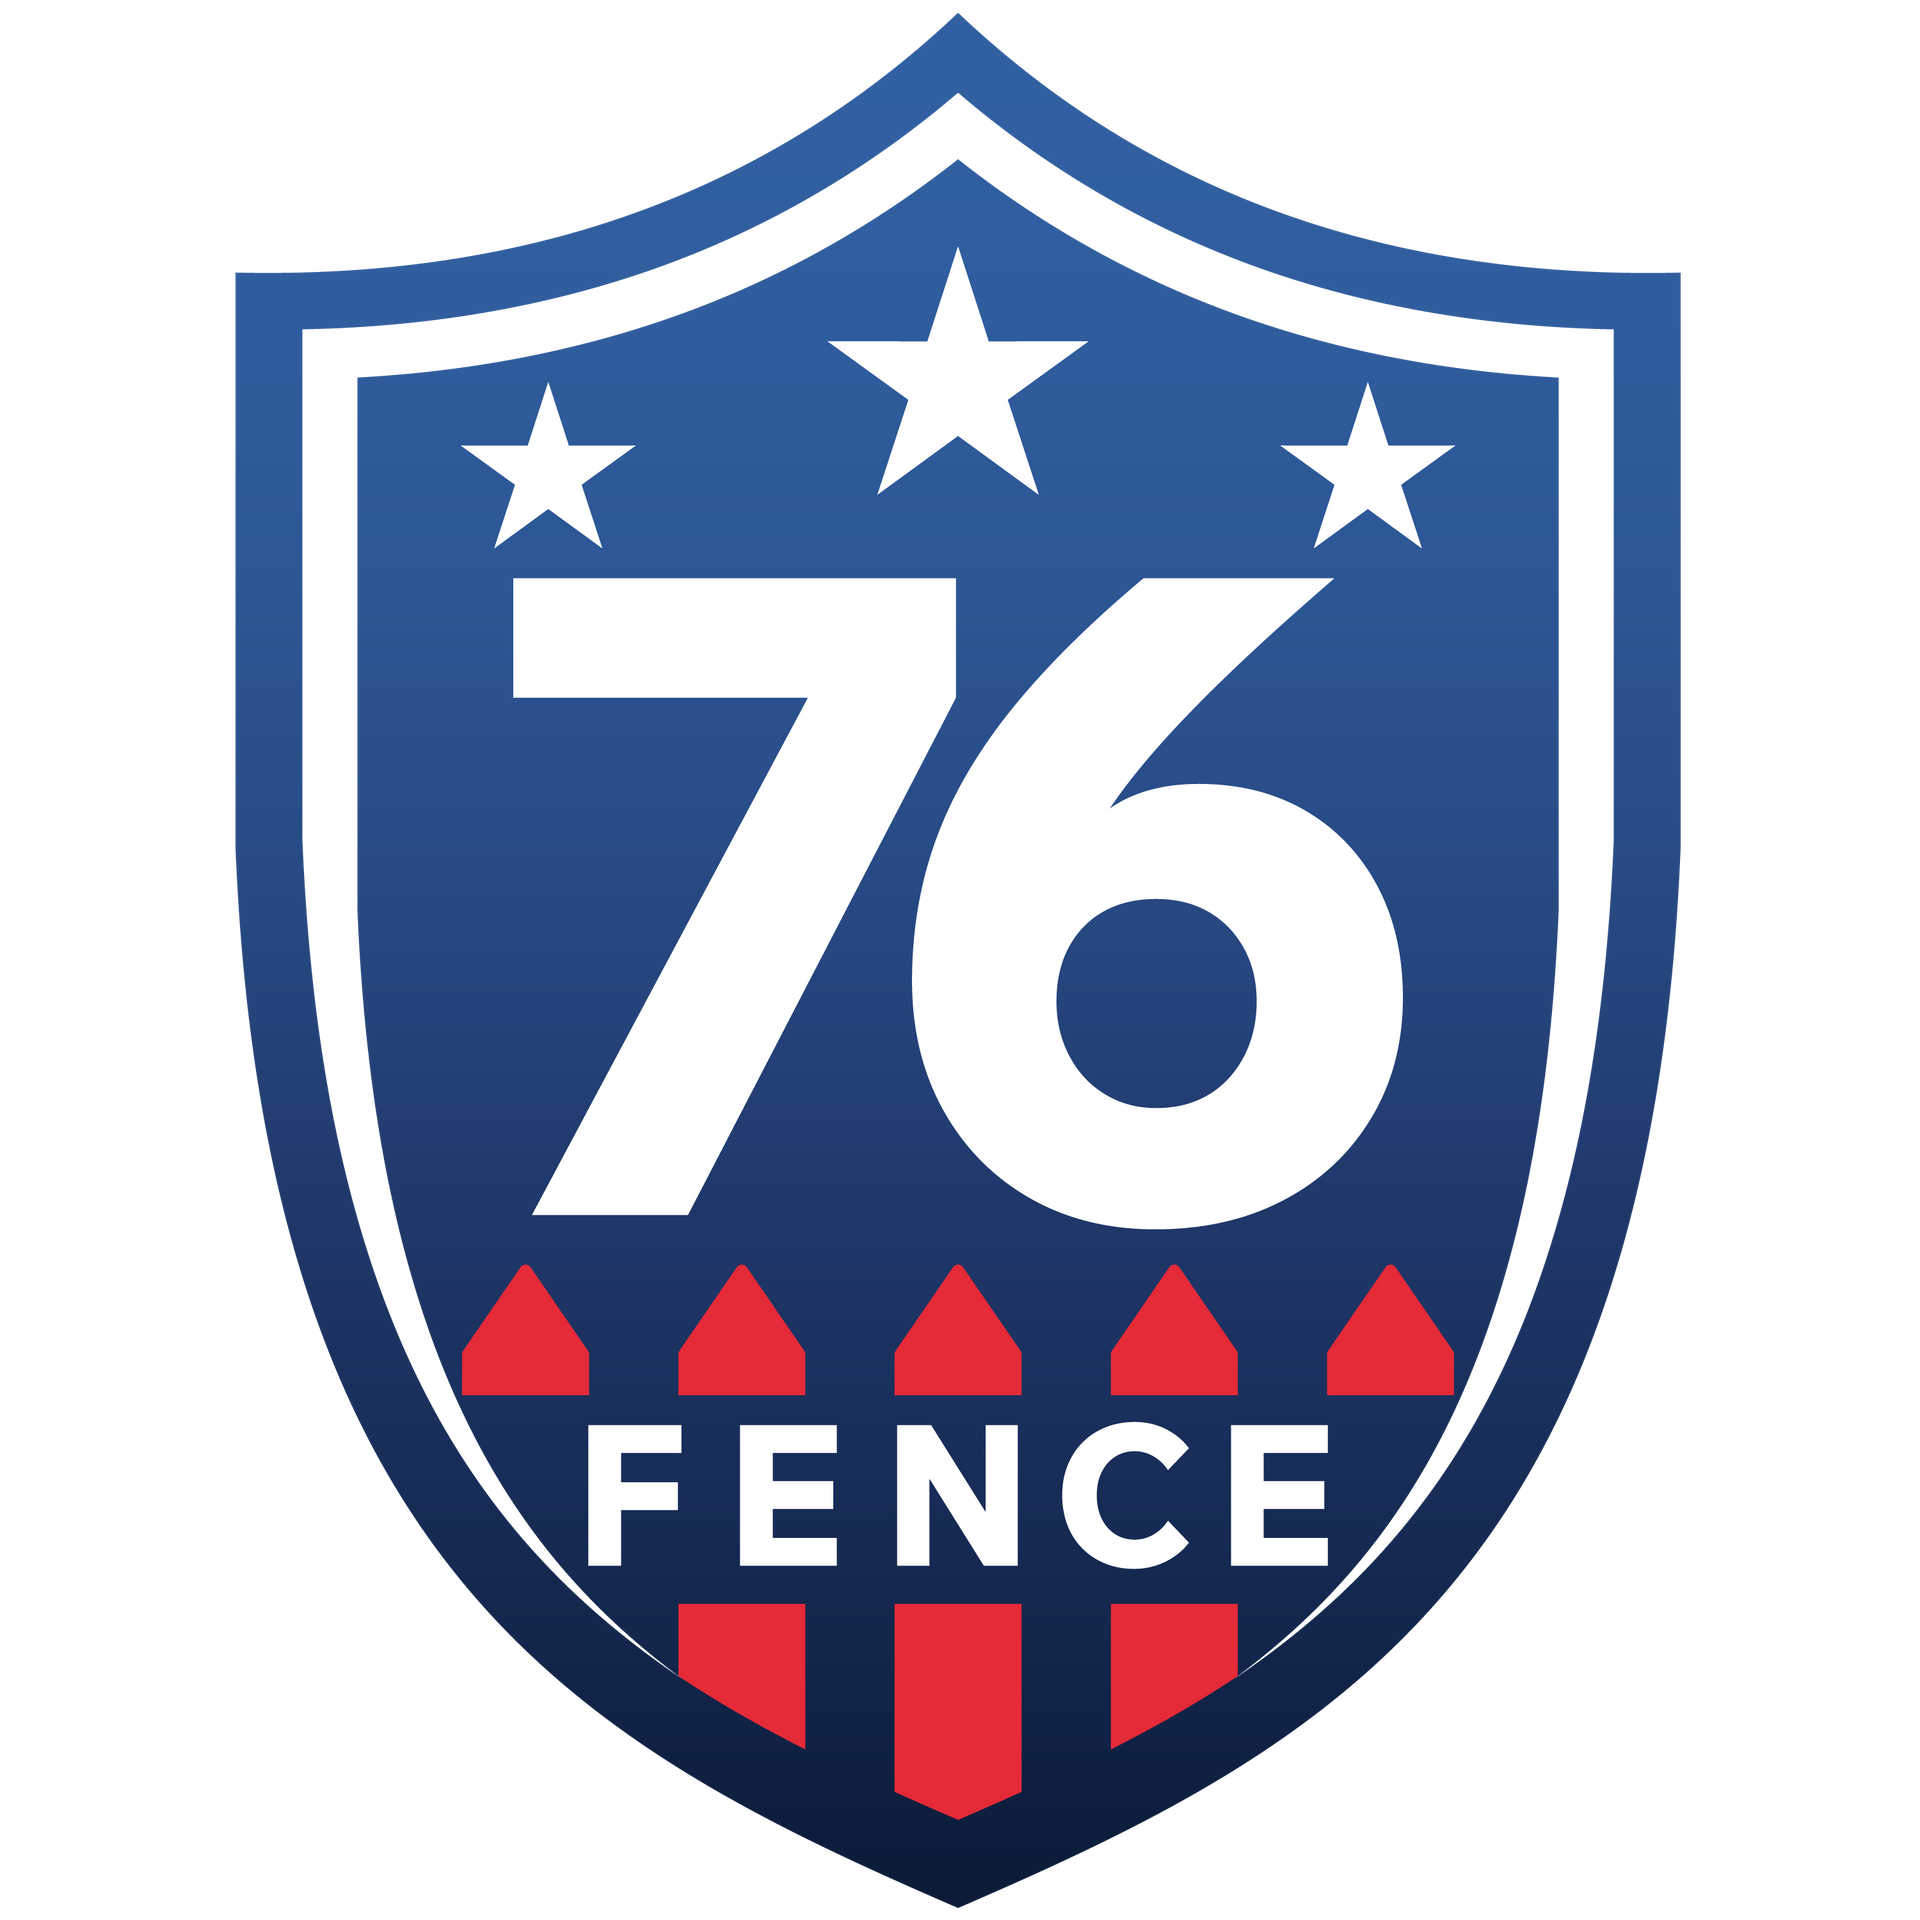 76 Fence Naperville Illinois